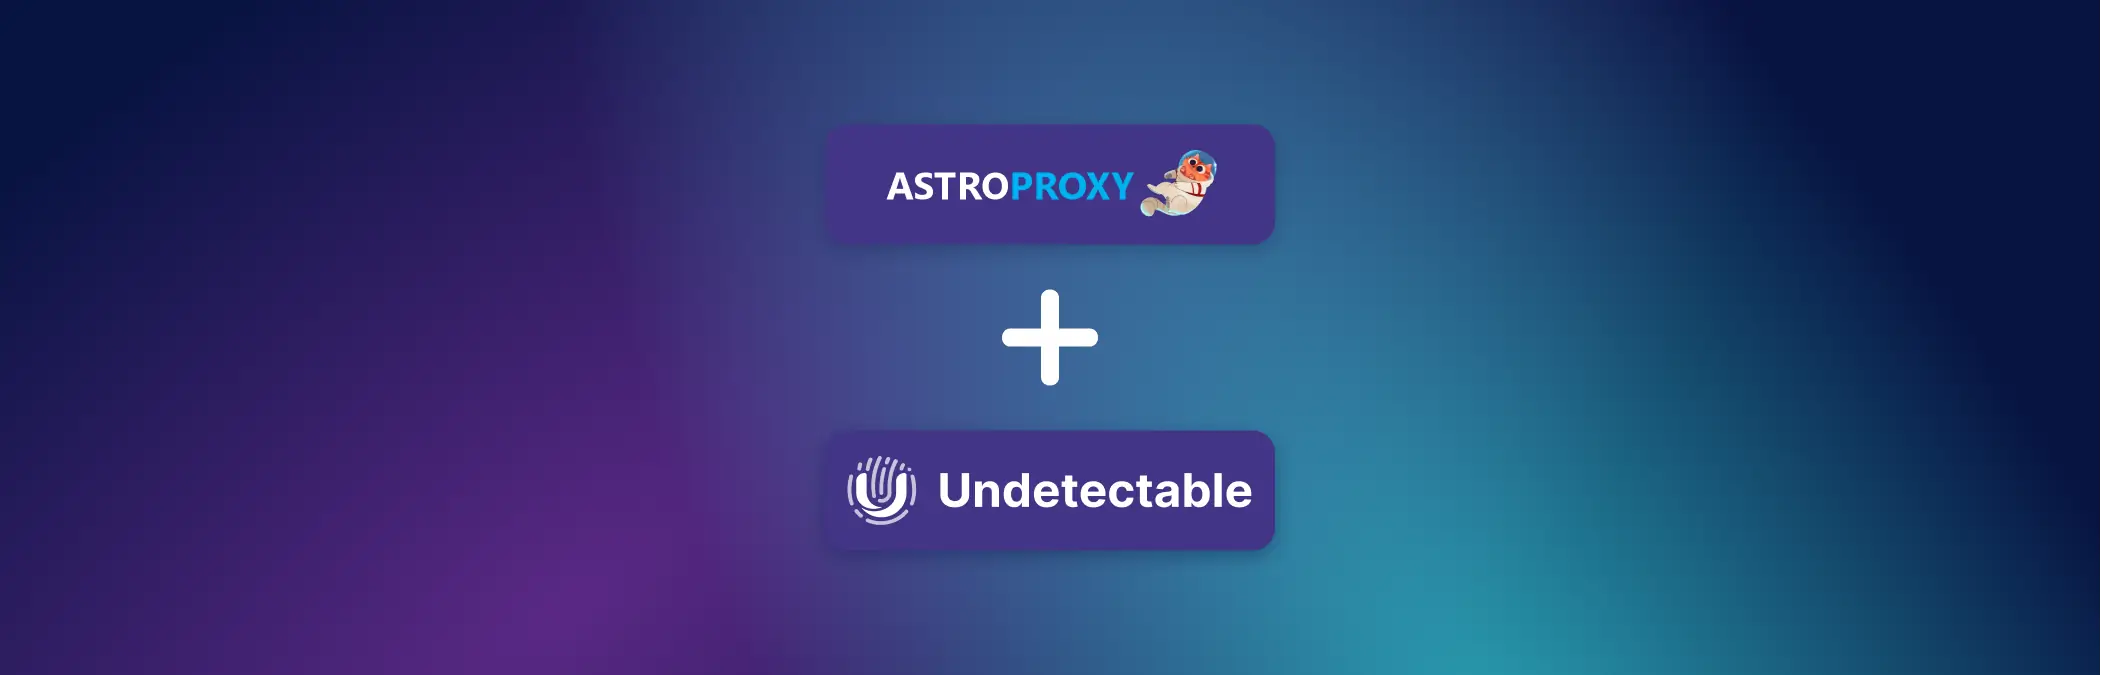 Гайд по настройке AstroProxy с Undetectable: лучшие резидентные и мобильные прокси